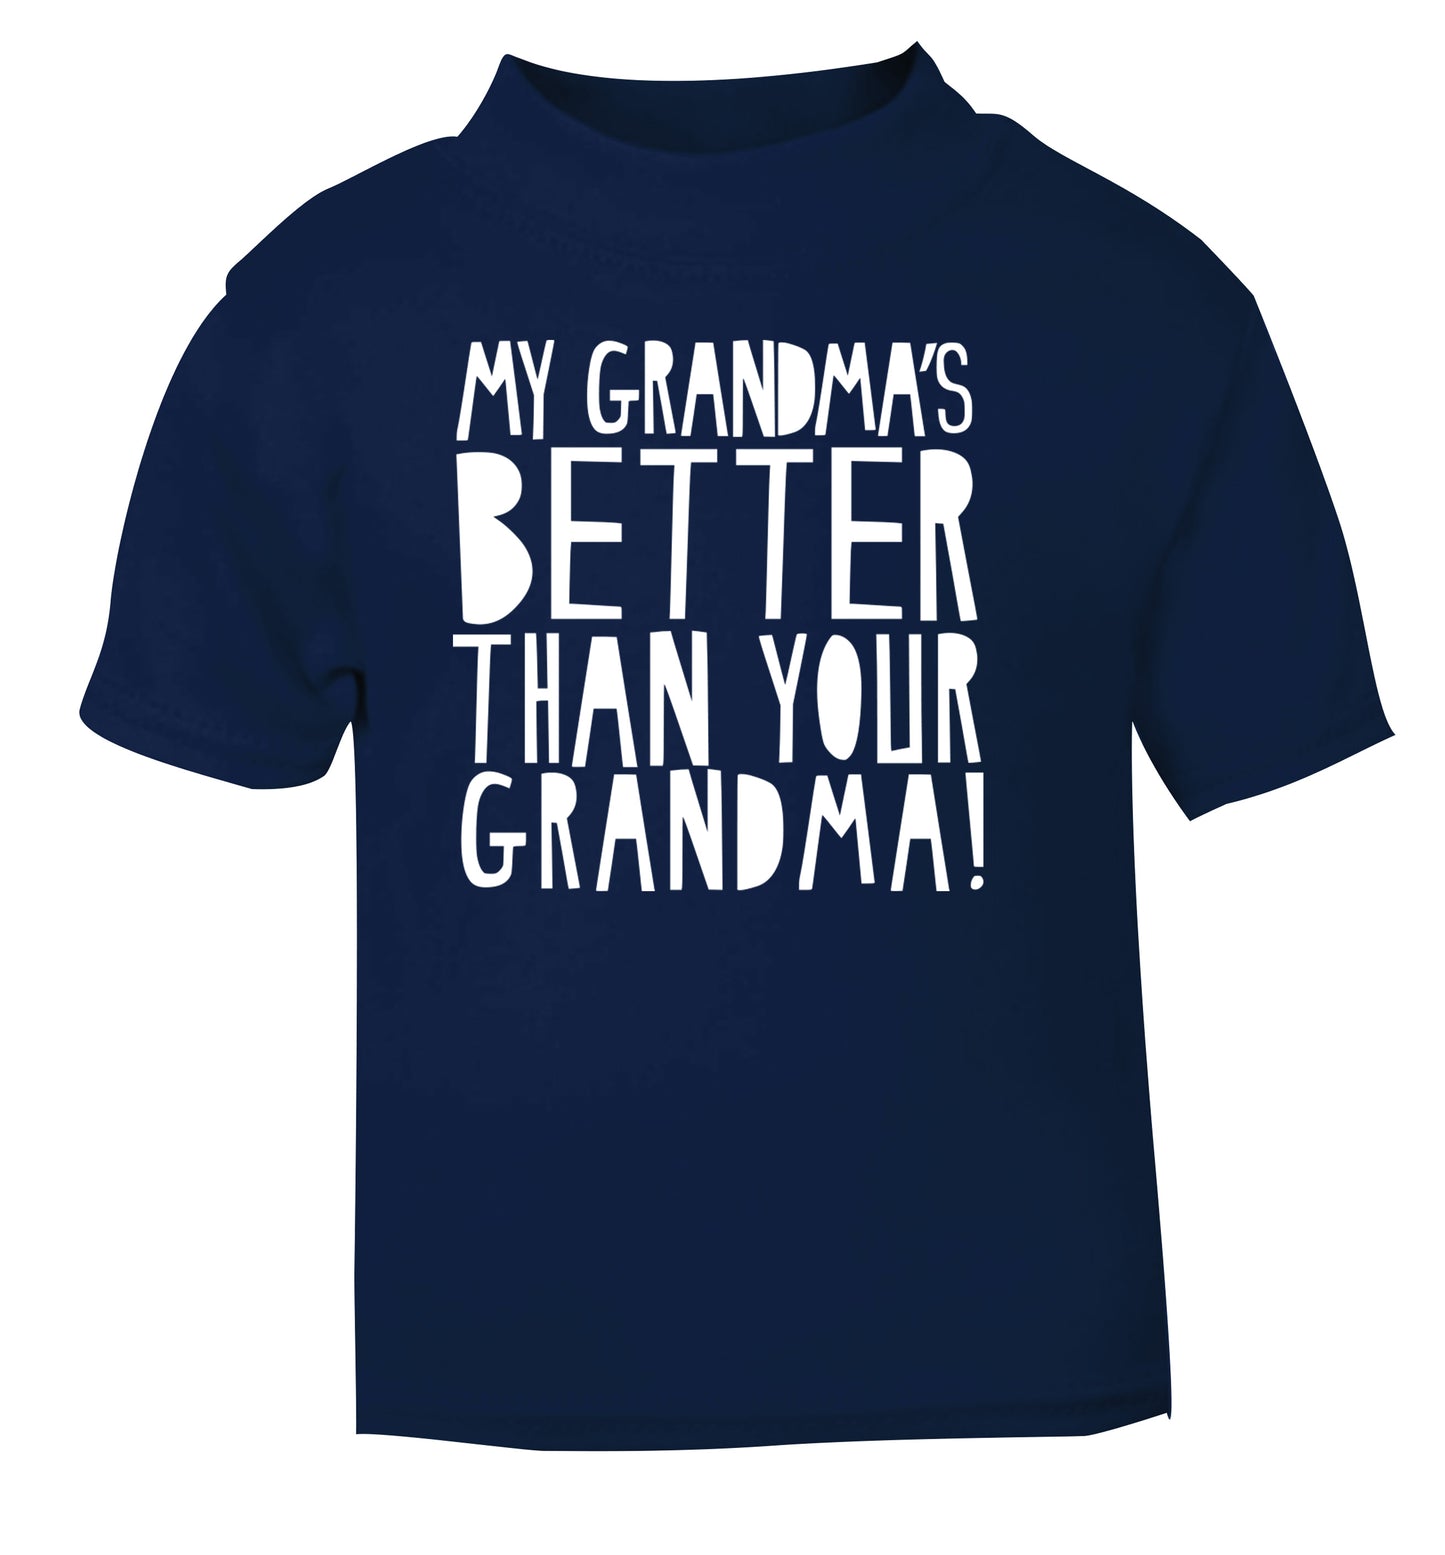 My grandma's better than your grandma navy Baby Toddler Tshirt 2 Years